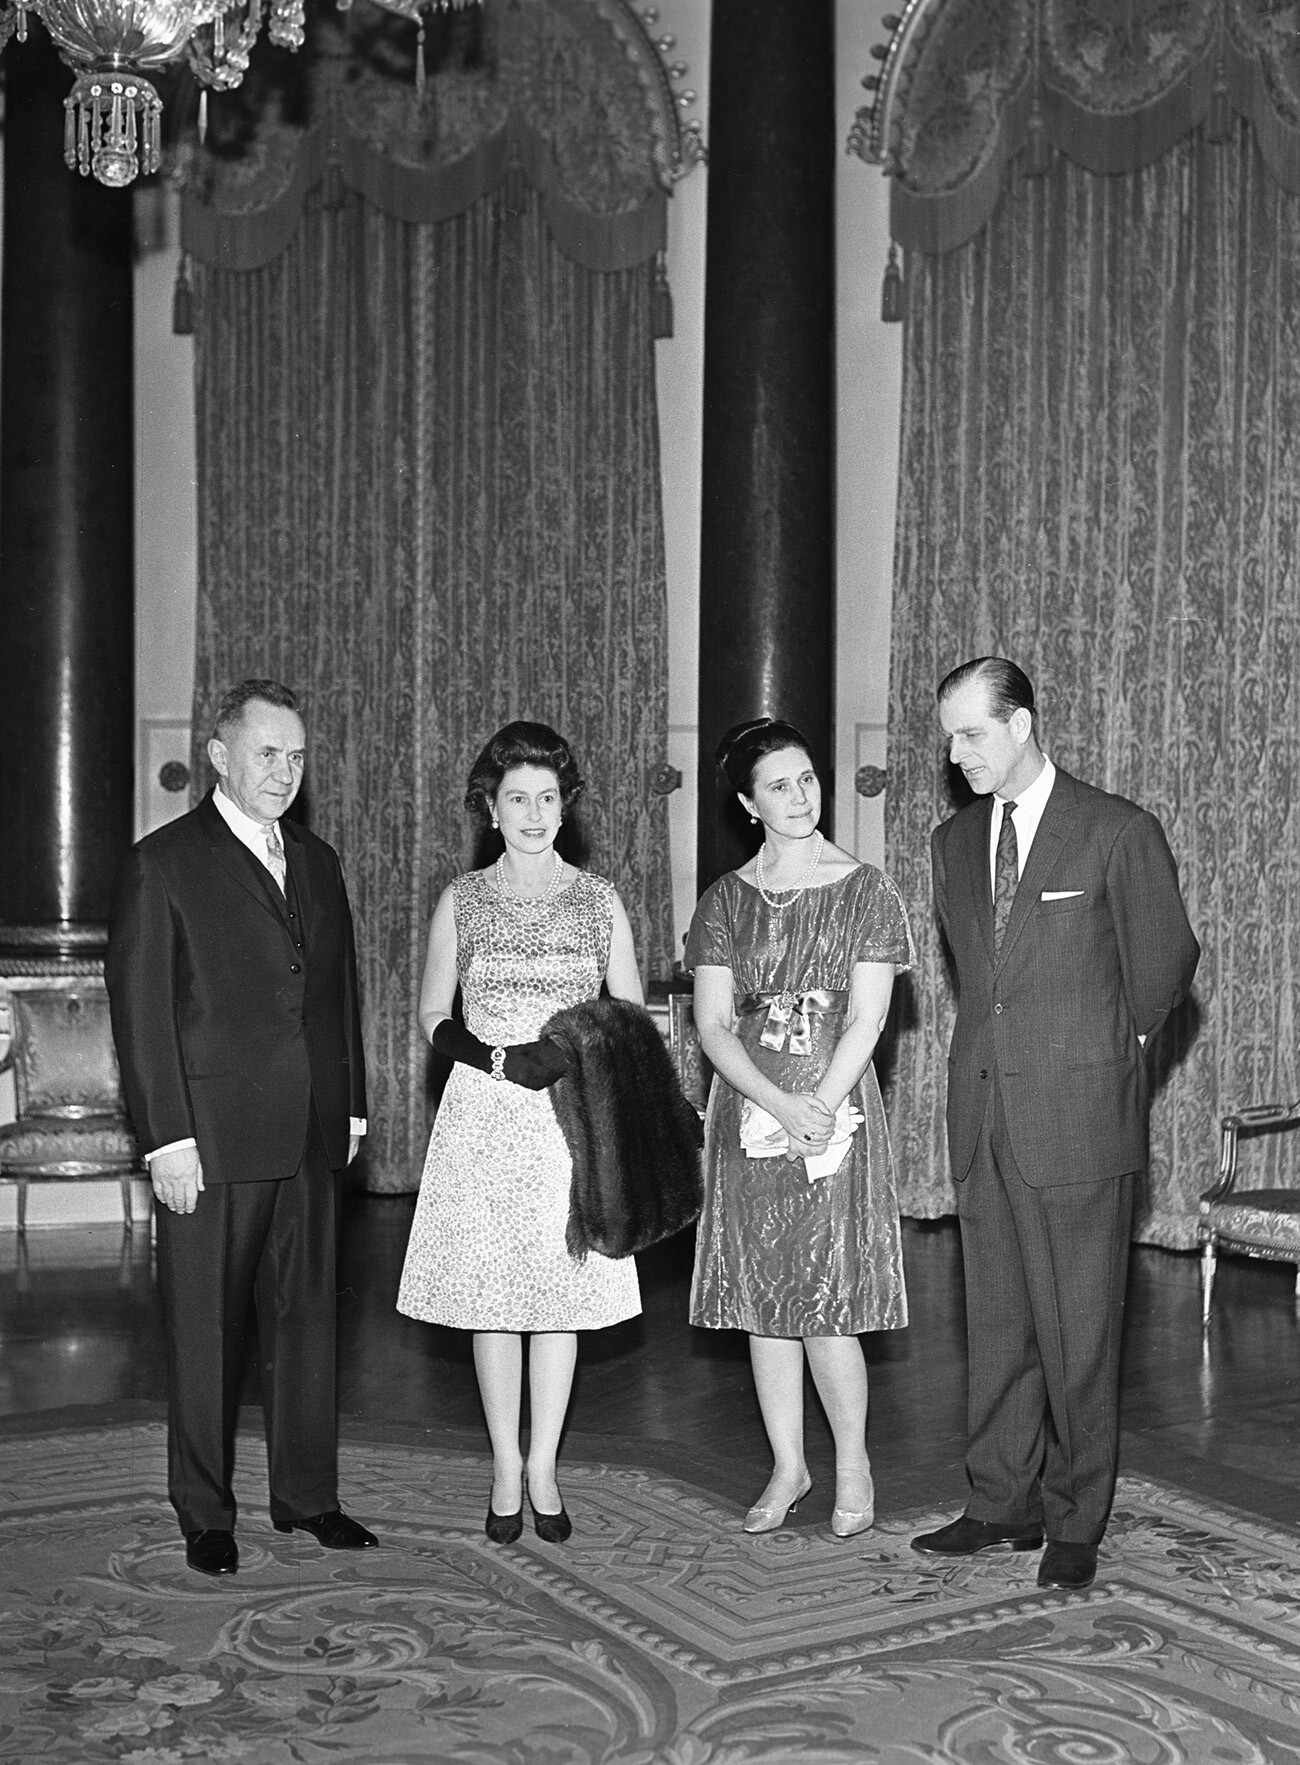 ソ連邦首相アレクセイ・コスイギン（左）とその妻 (右から2番目) が、イギリスでエリザベス女王とフィリップ殿下と会談。